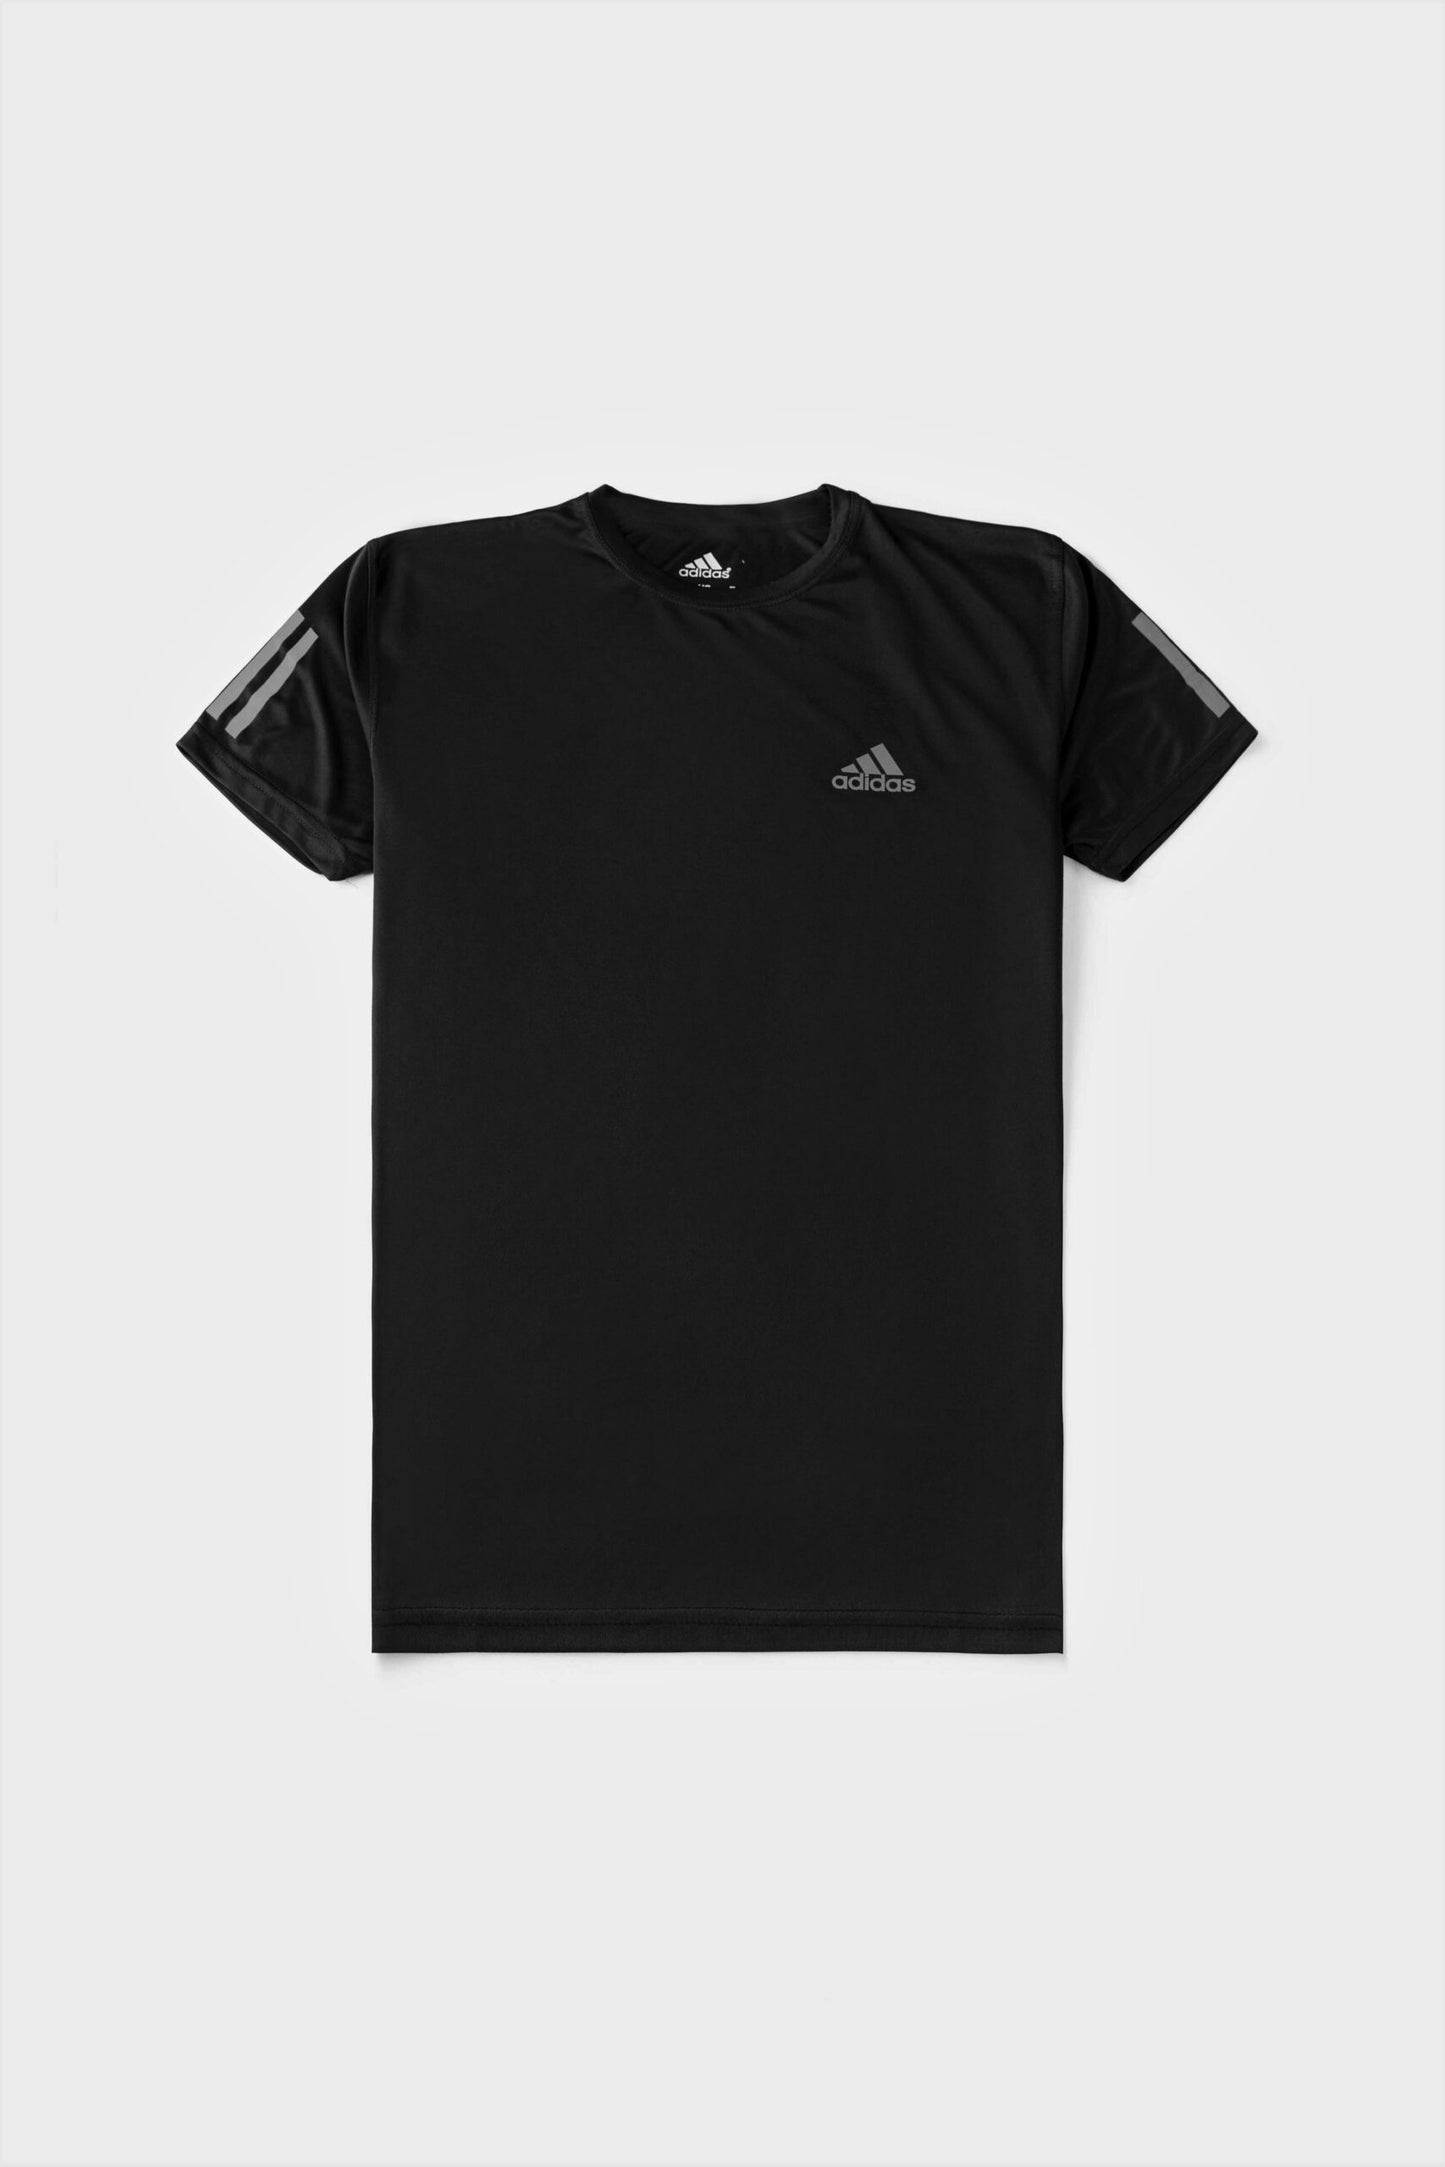 Premium Quality Dri-FIT Adidas T-Shirt Black